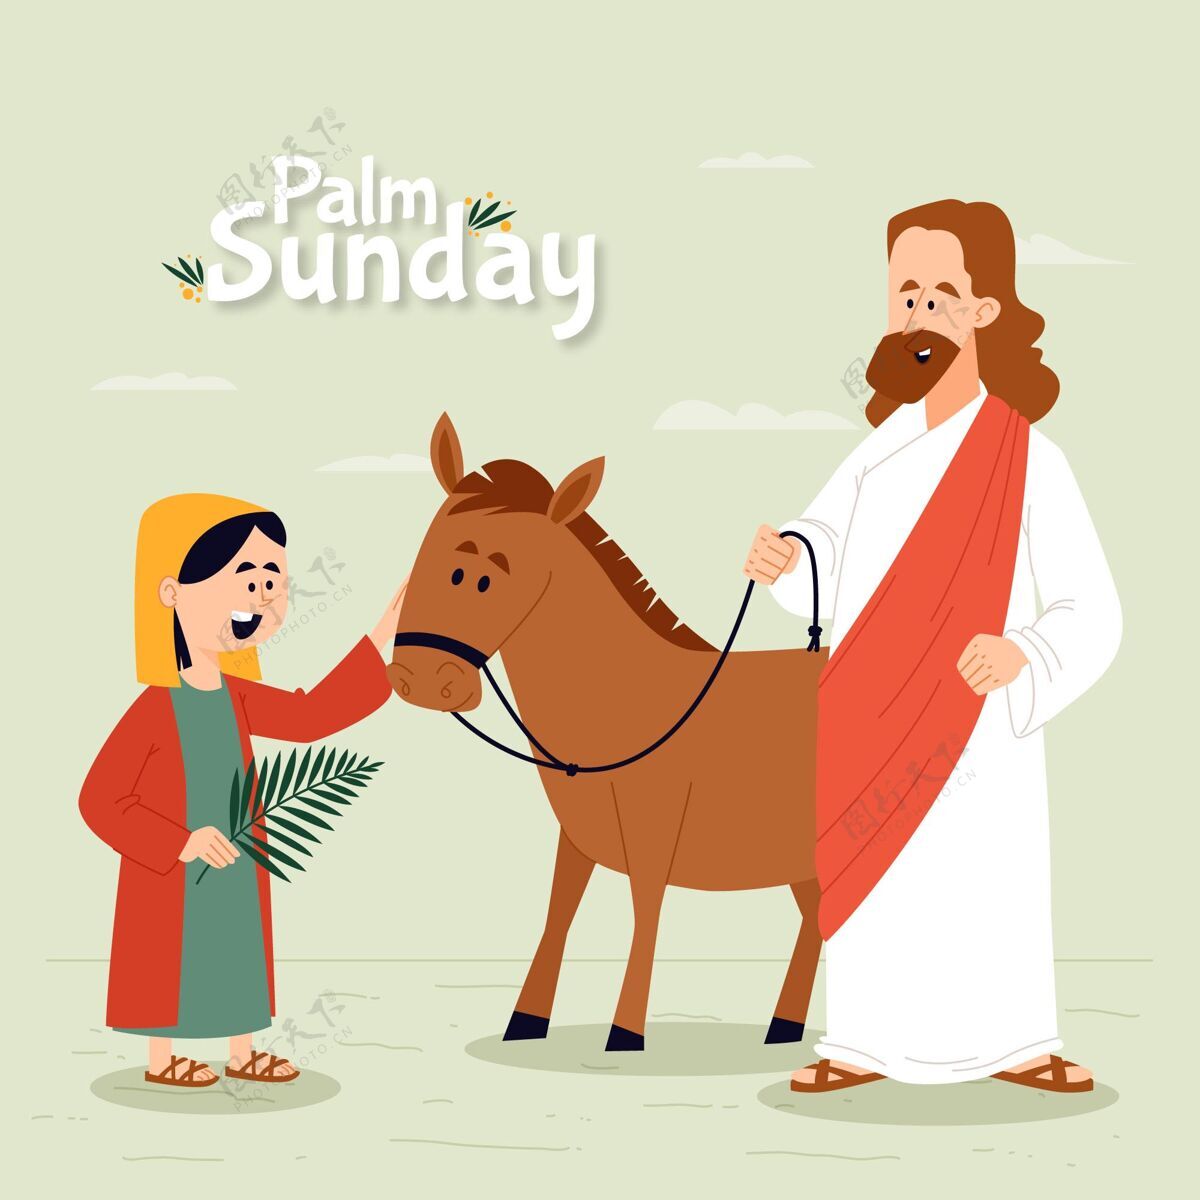 插图平掌星期天插图单位设计圣周耶稣